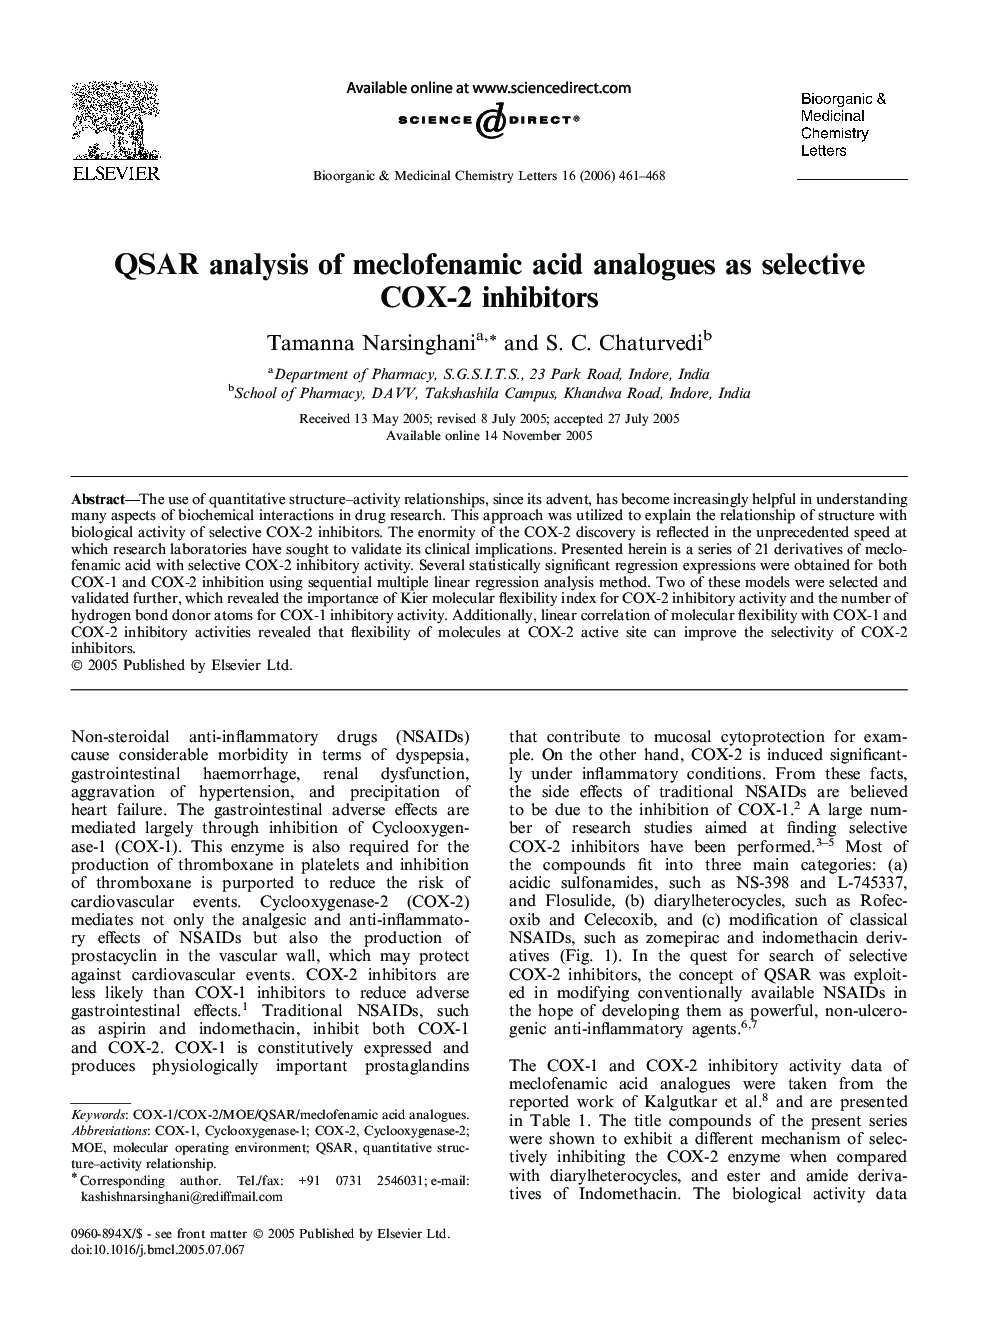 QSAR analysis of meclofenamic acid analogues as selective COX-2 inhibitors